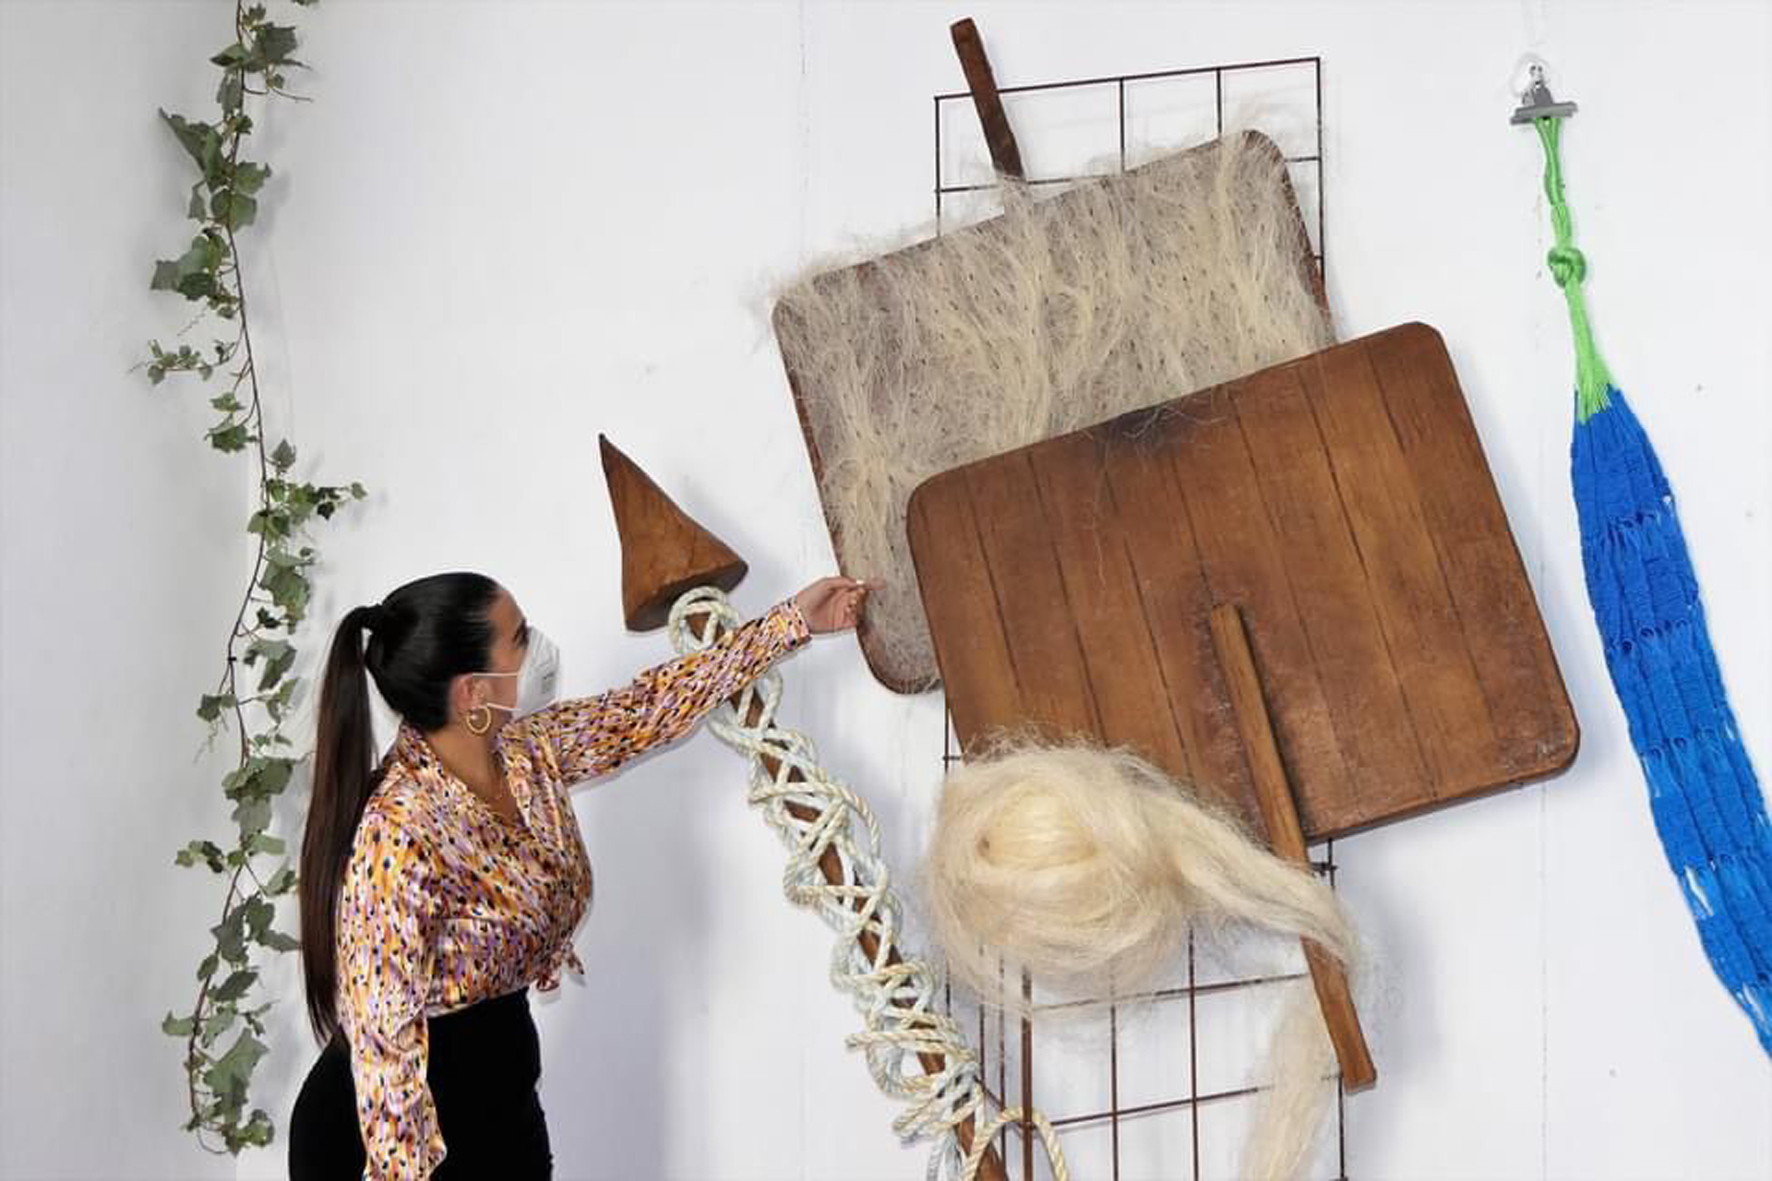 La Sala de Exposiciones del Cabildo Insular acoge la muestra de artesanos herreños “Confecciones”